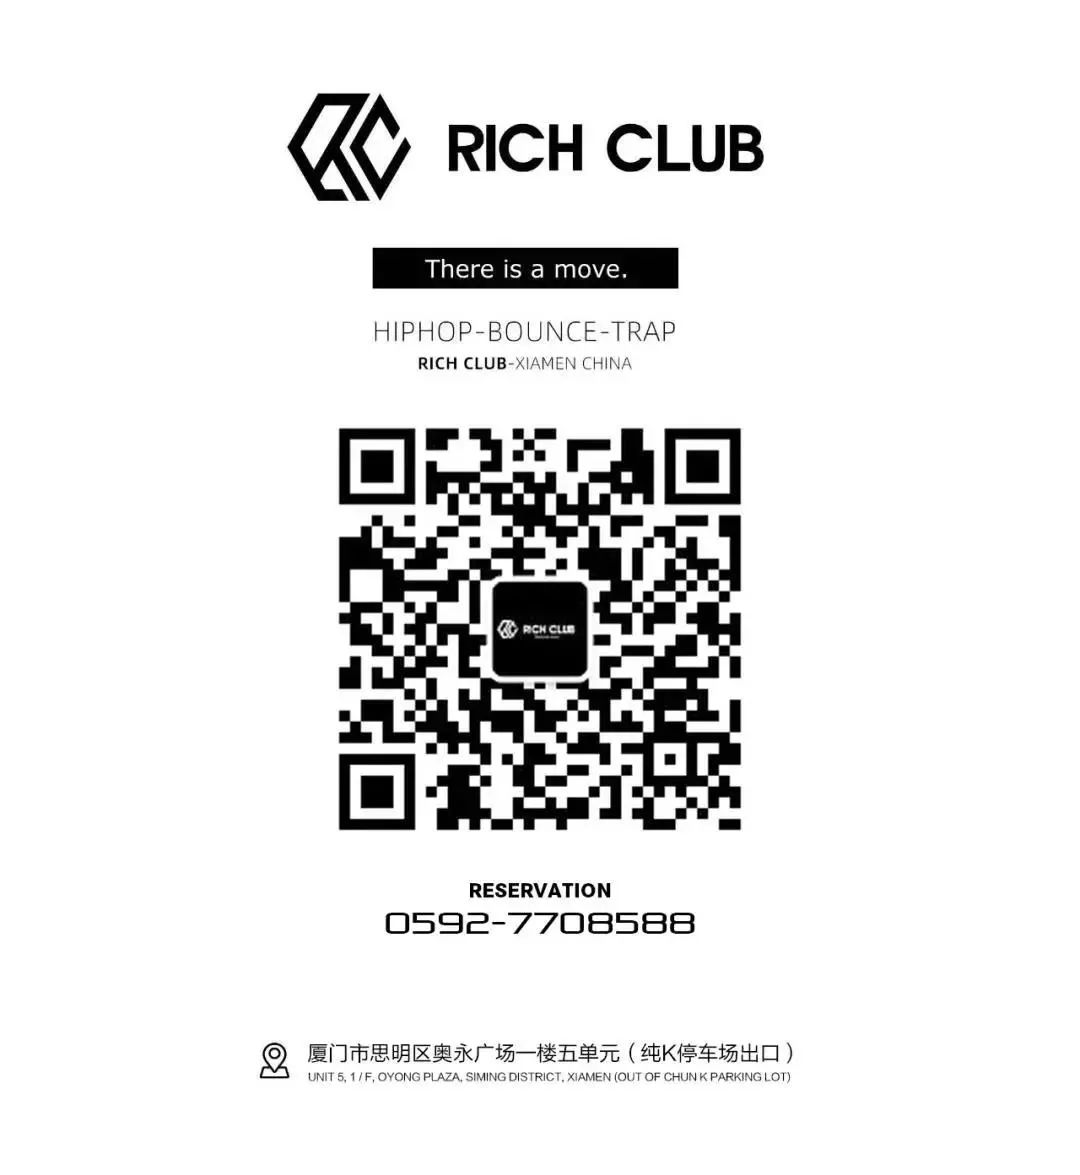 RICH CLUB | 07.18VINA HOUSE专场，全员都是“狠角色”！-厦门Rich Club/富人俱乐部